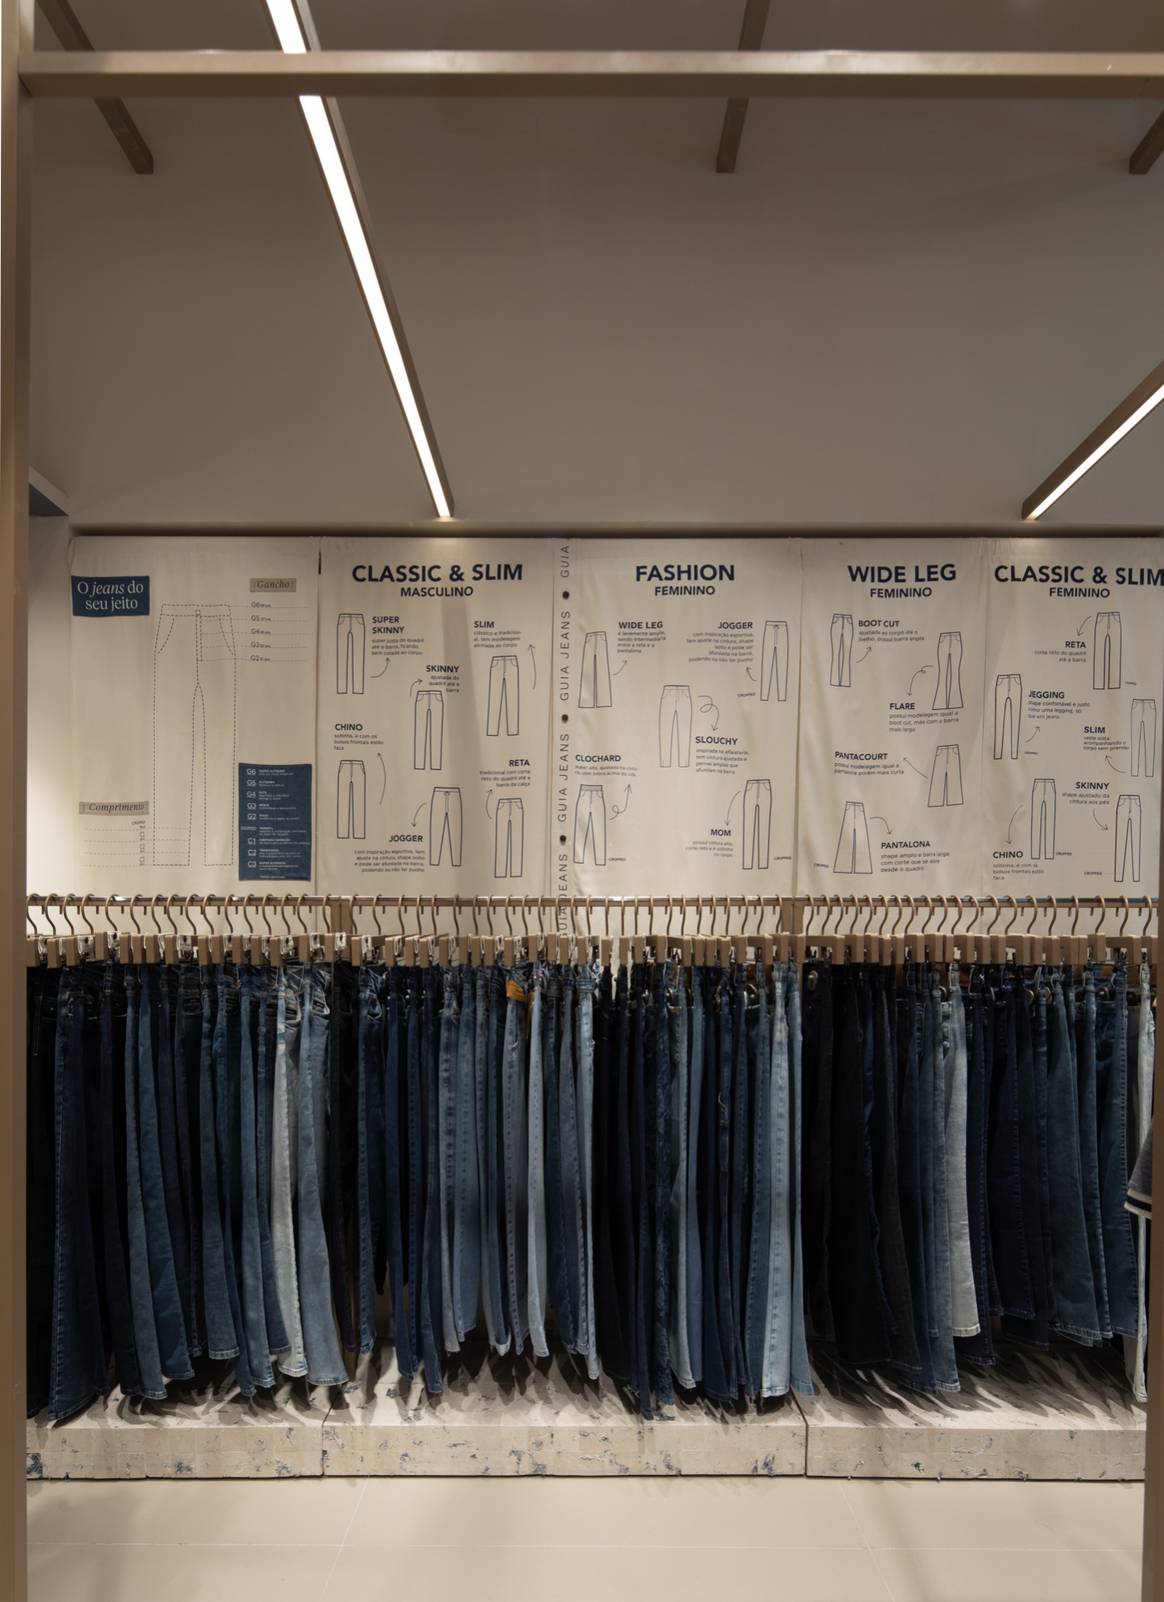 Interior da loja com guia jeans na parede